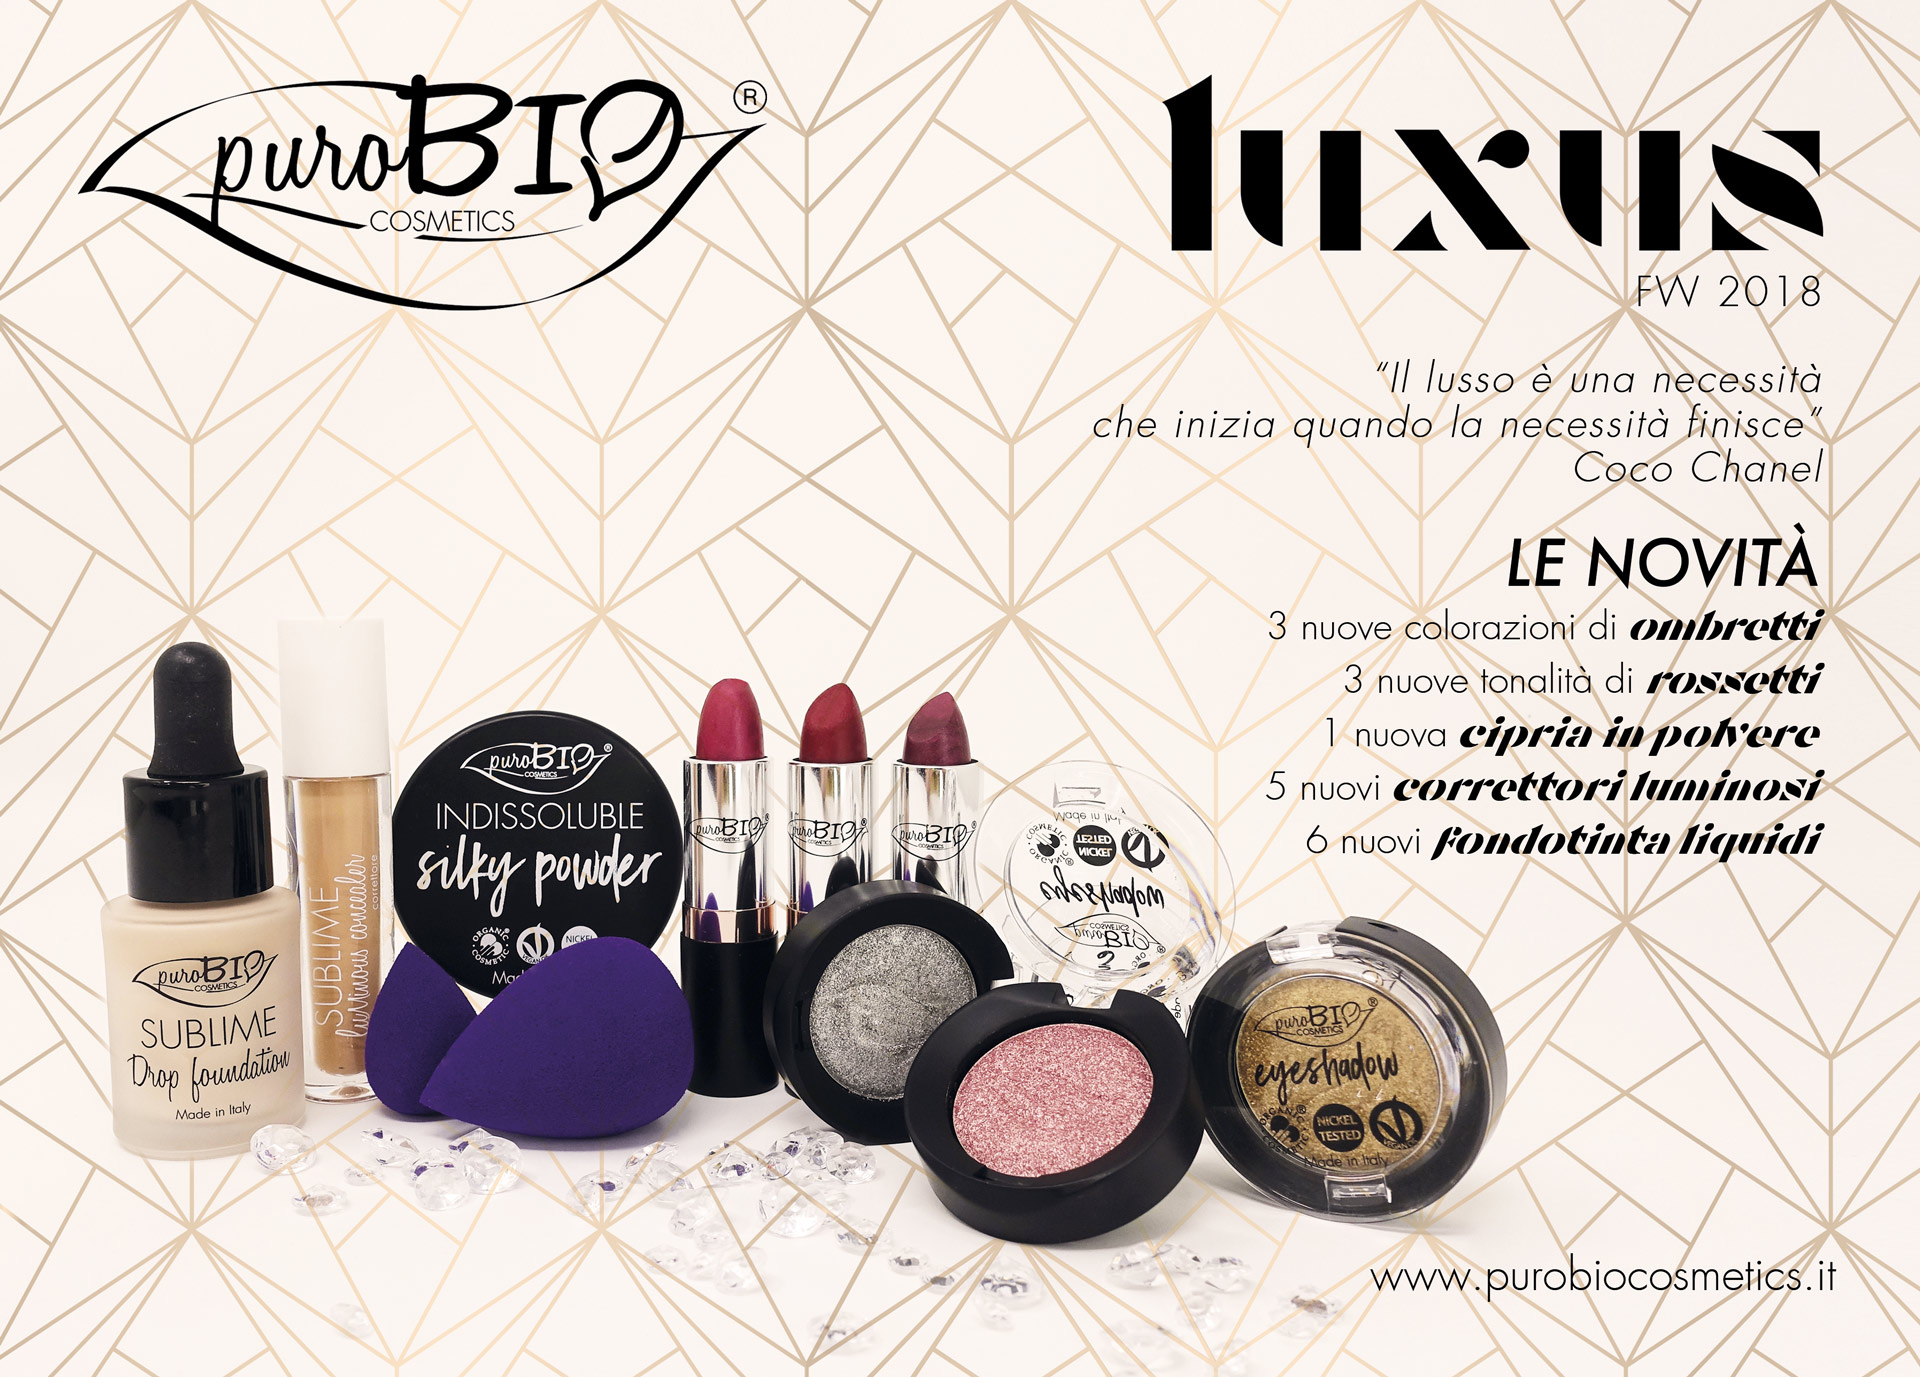 Purobio Luxus Collezione trucco make-up autunno 2018 - Info, recensione, review, opinioni, swatch, prezzo, dove acquistare - Prodotti